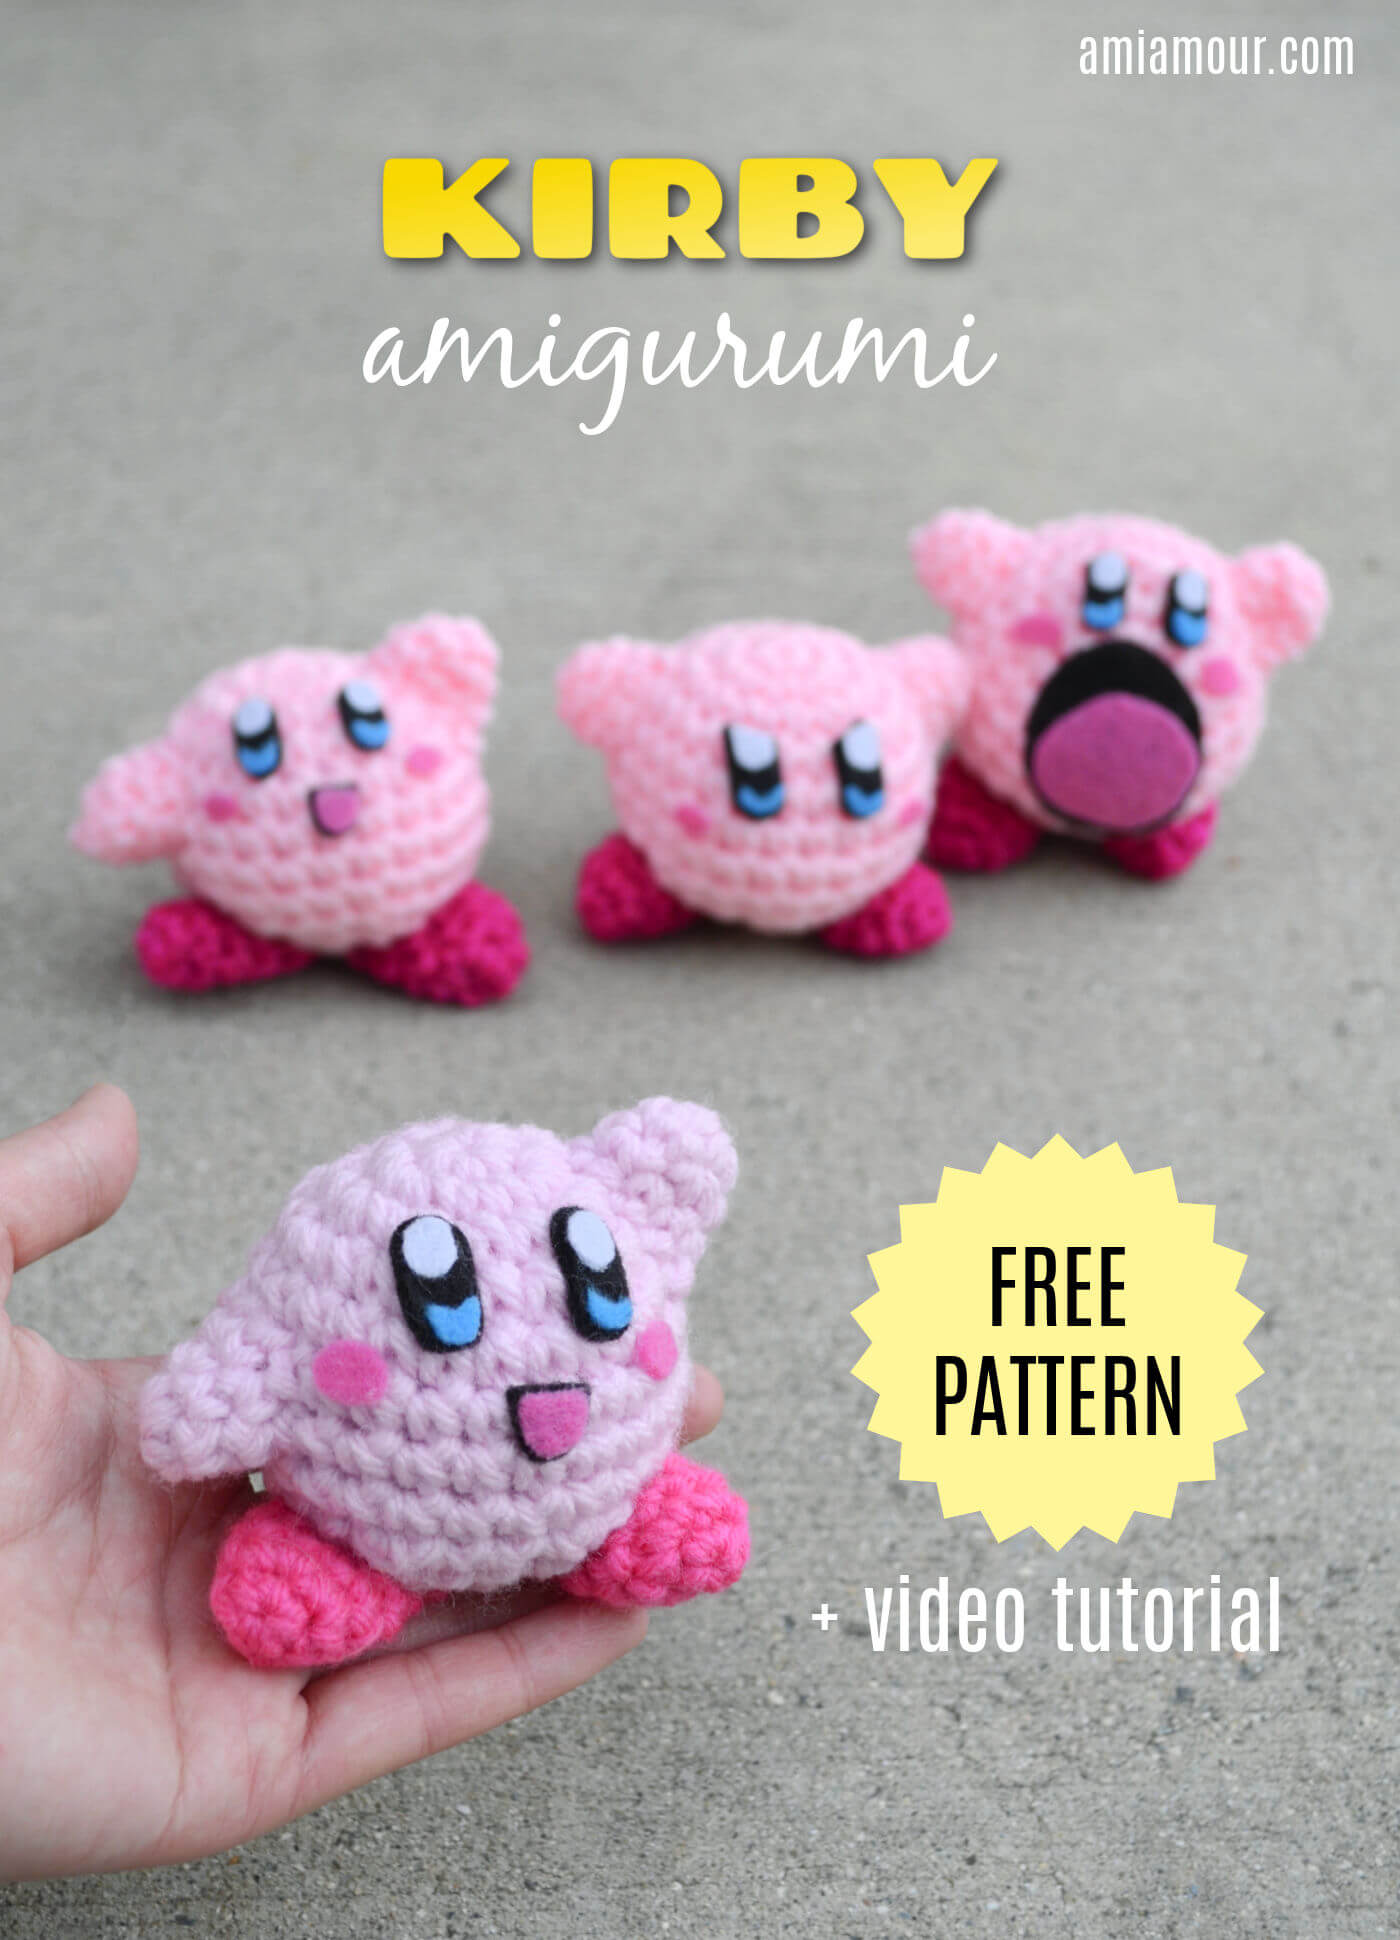 Kirby - Free Crochet Pattern